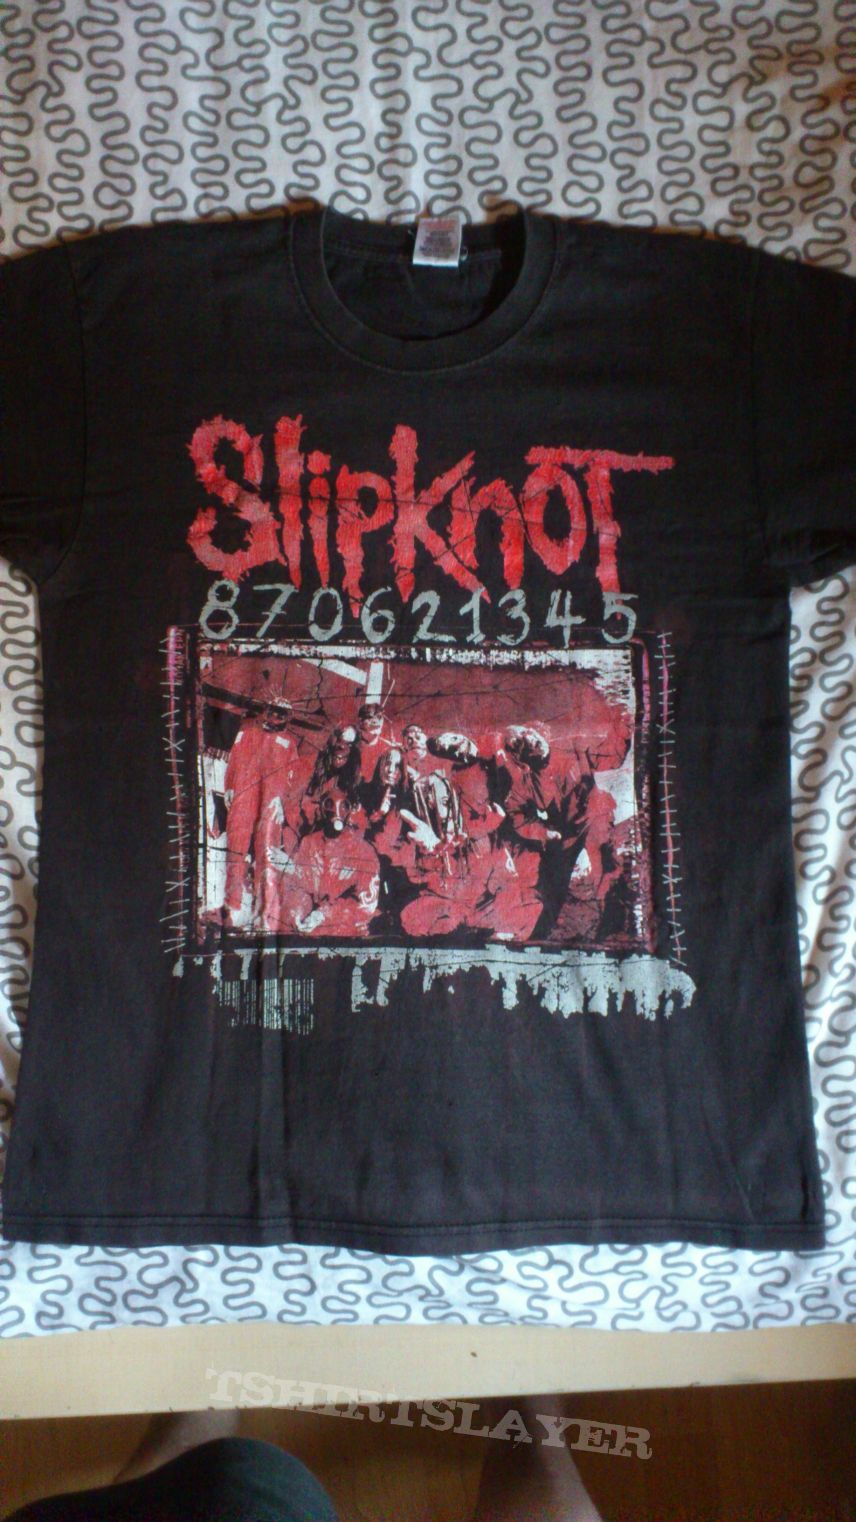 Slipknot Tour shirt